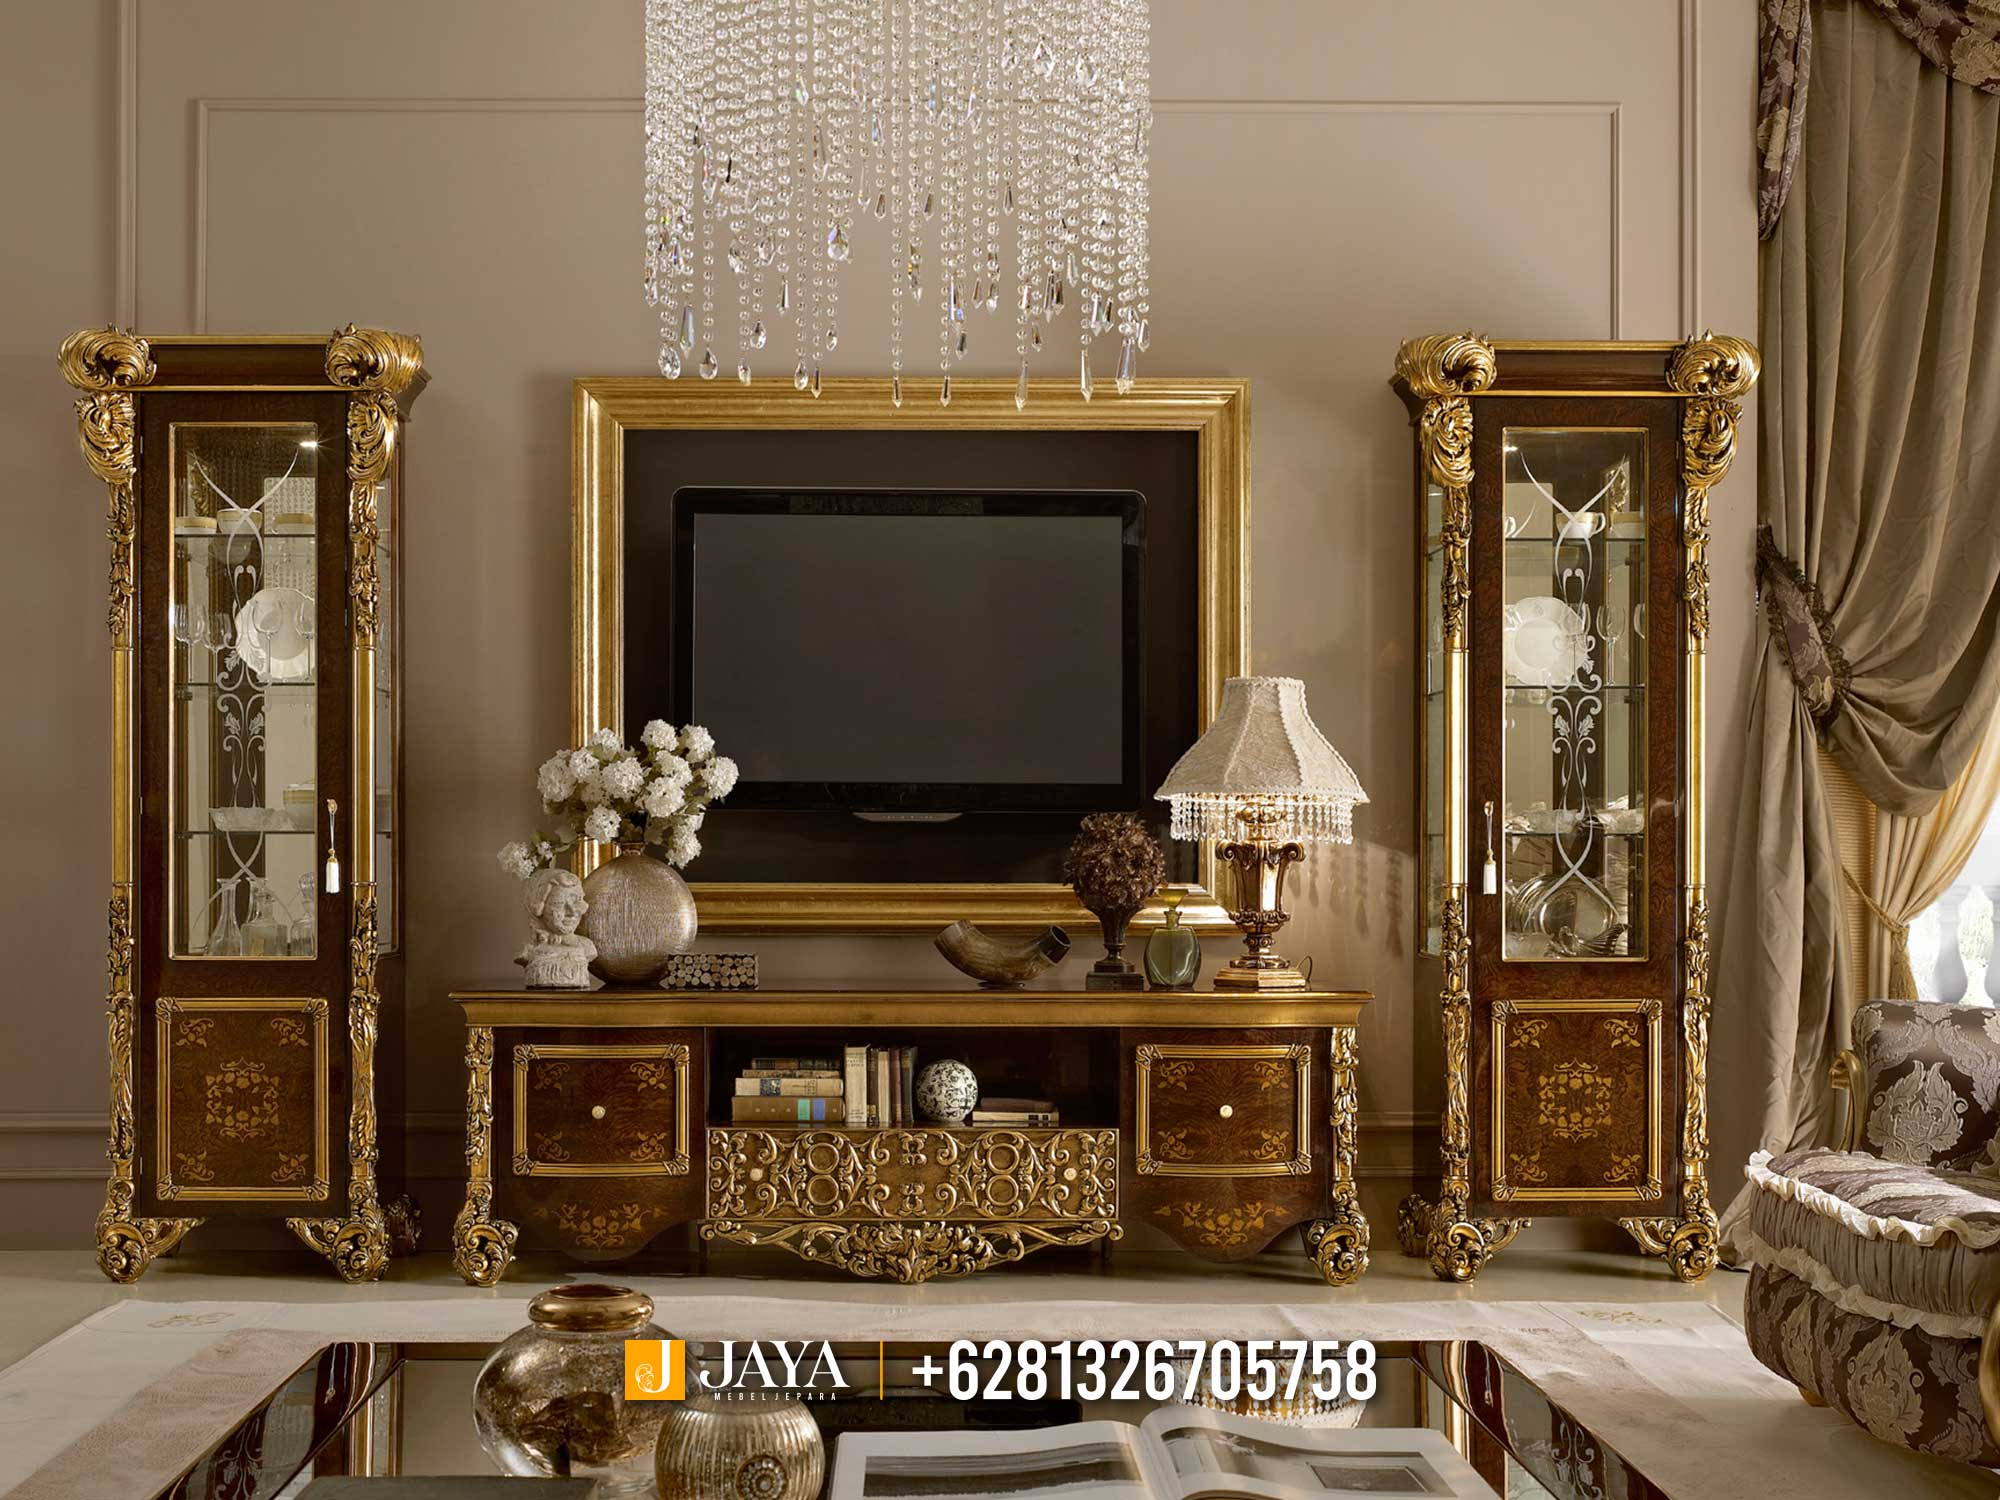 Beli Sekarang Bufet TV Mewah Terbaru Luxury Carving April JM516